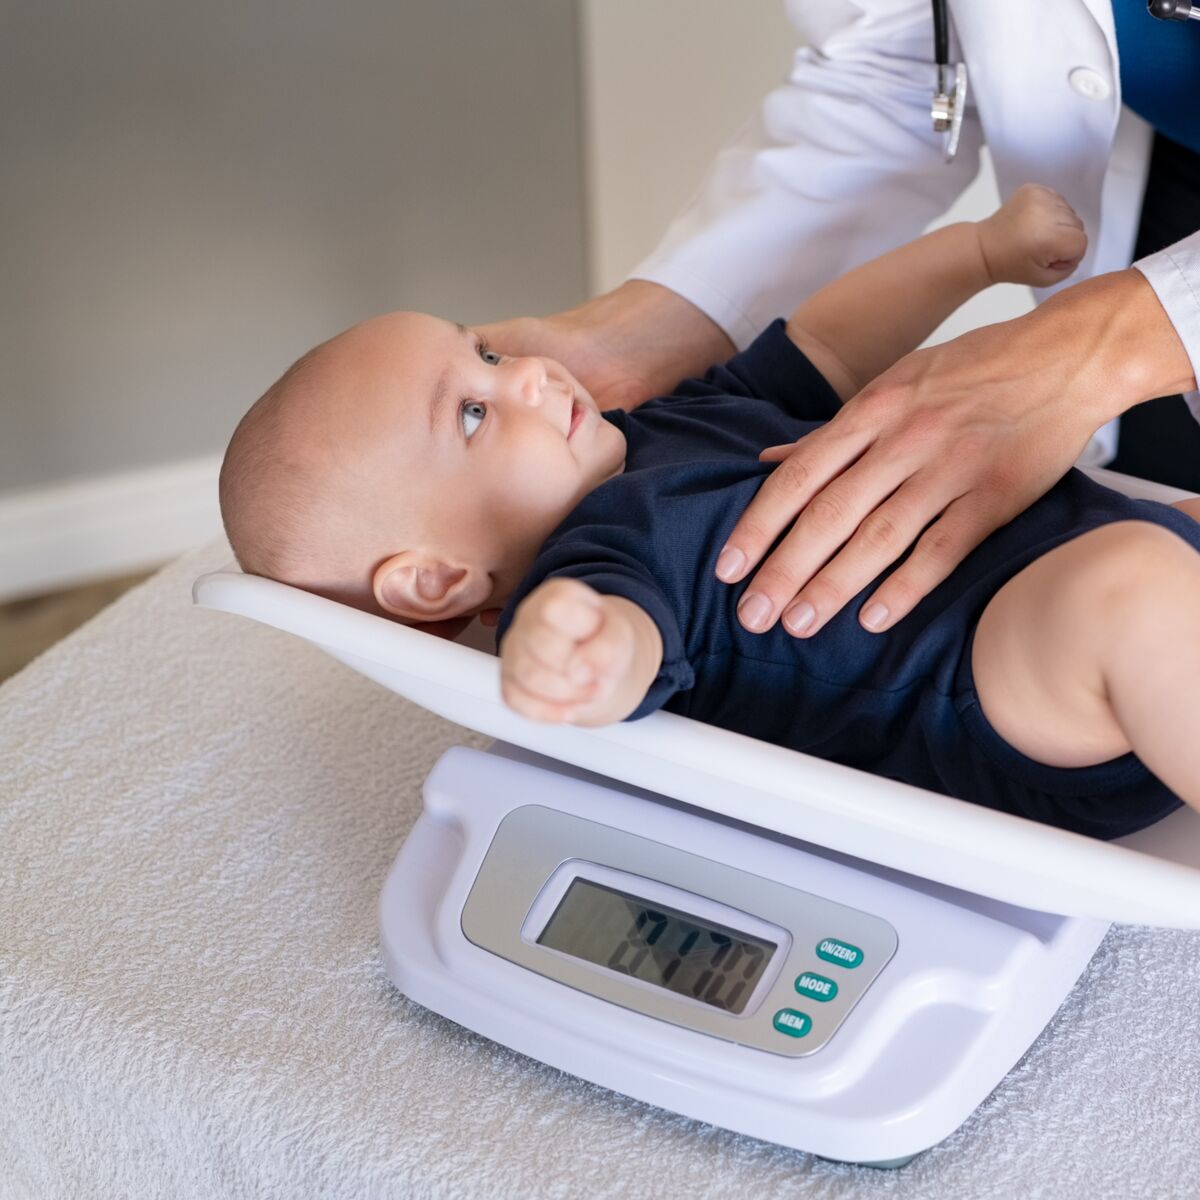 Taille et poids : comment interpréter la courbe de croissance du bébé  garçon ?